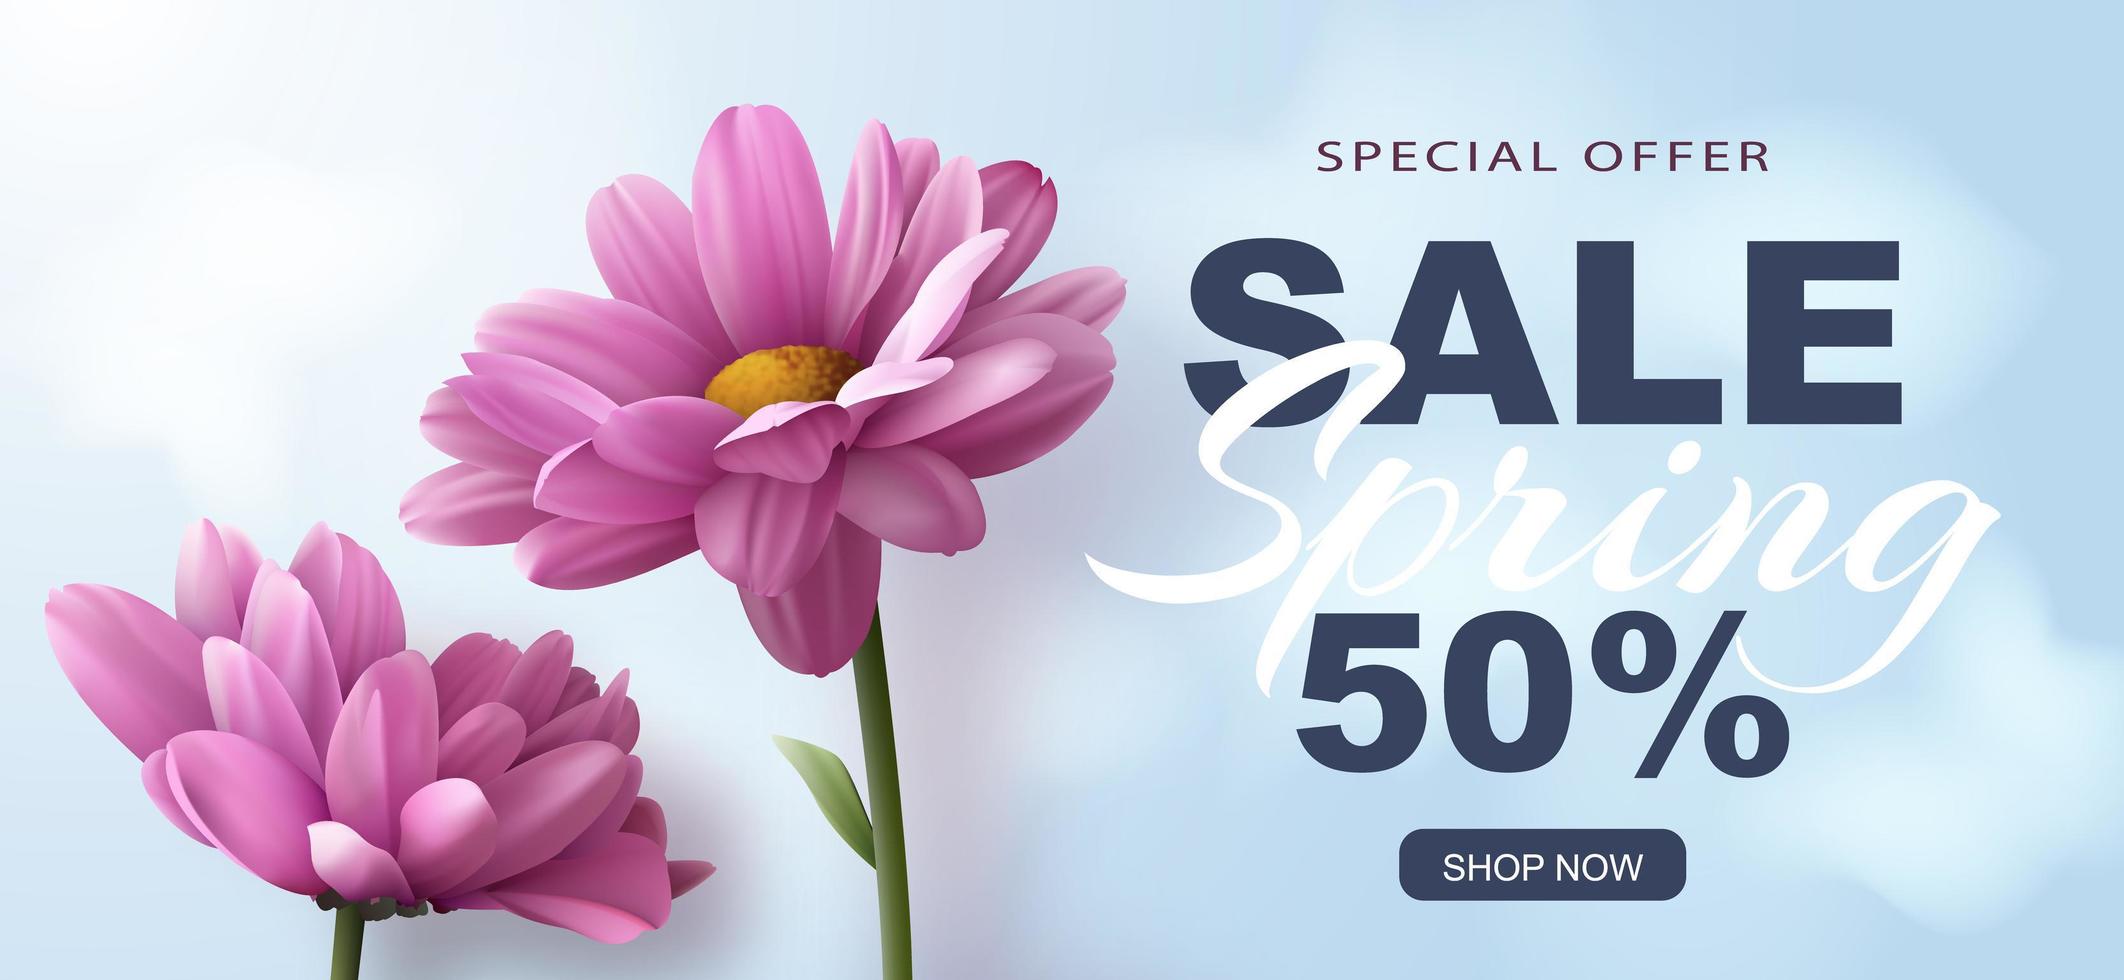 speciale aanbieding lente verkoop banner met twee realistische roze chrysanten bloemen op een blauwe achtergrond en reclame korting tekst decoratie. vectorillustratie. vector